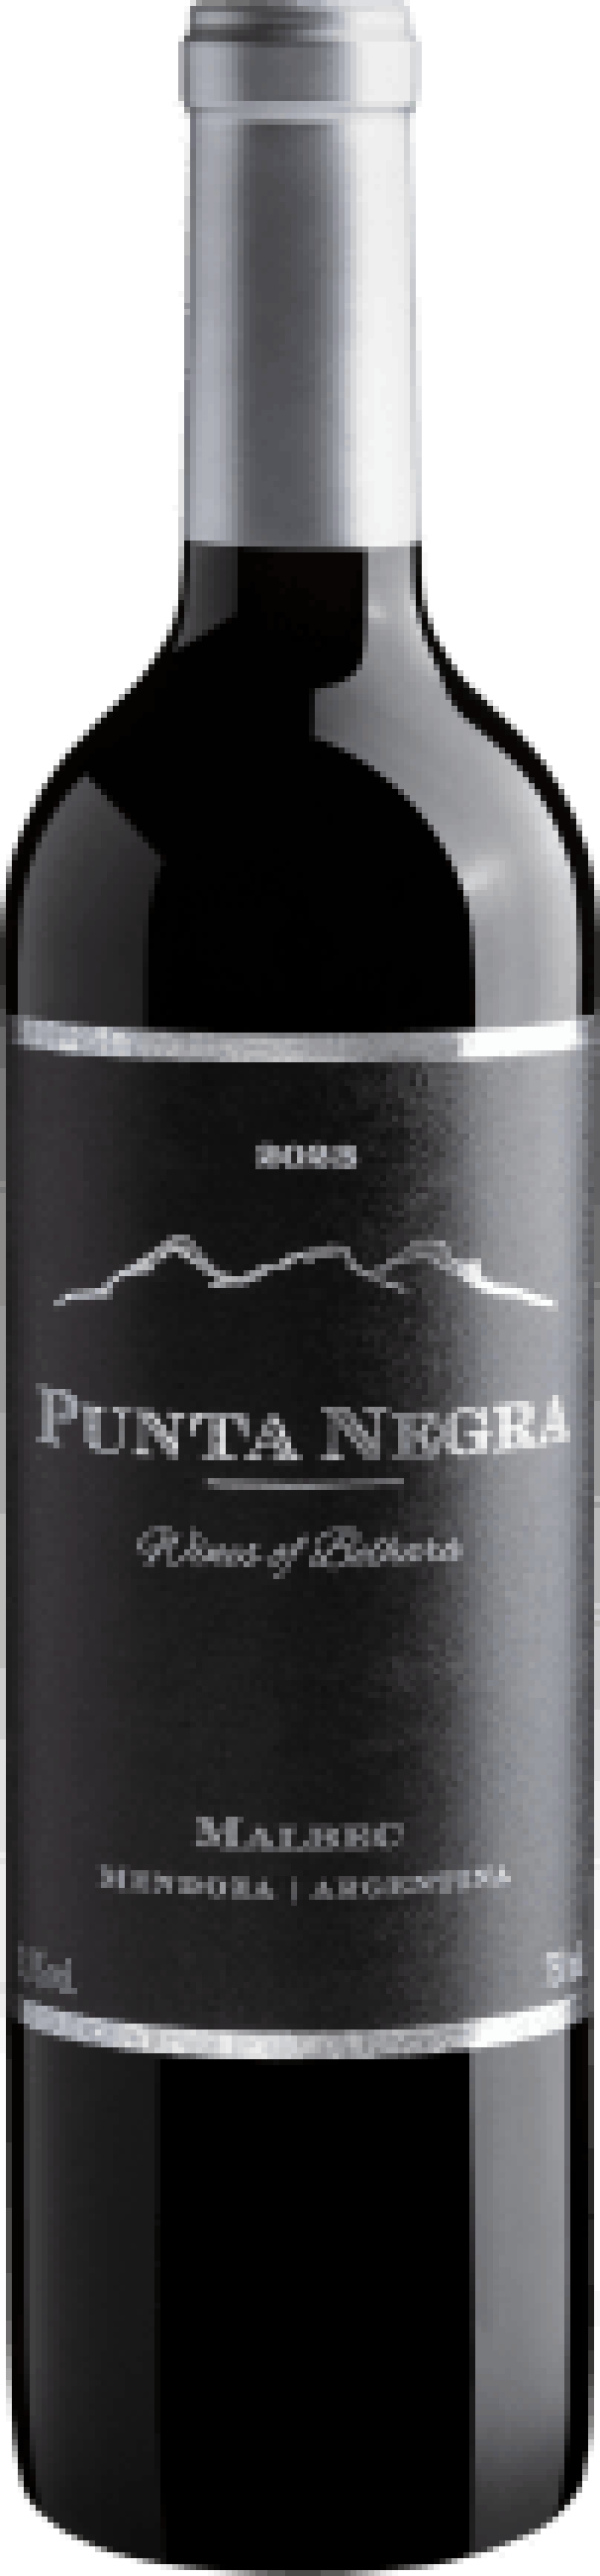 Punta Negra Wines of Belhara Malbec 2023